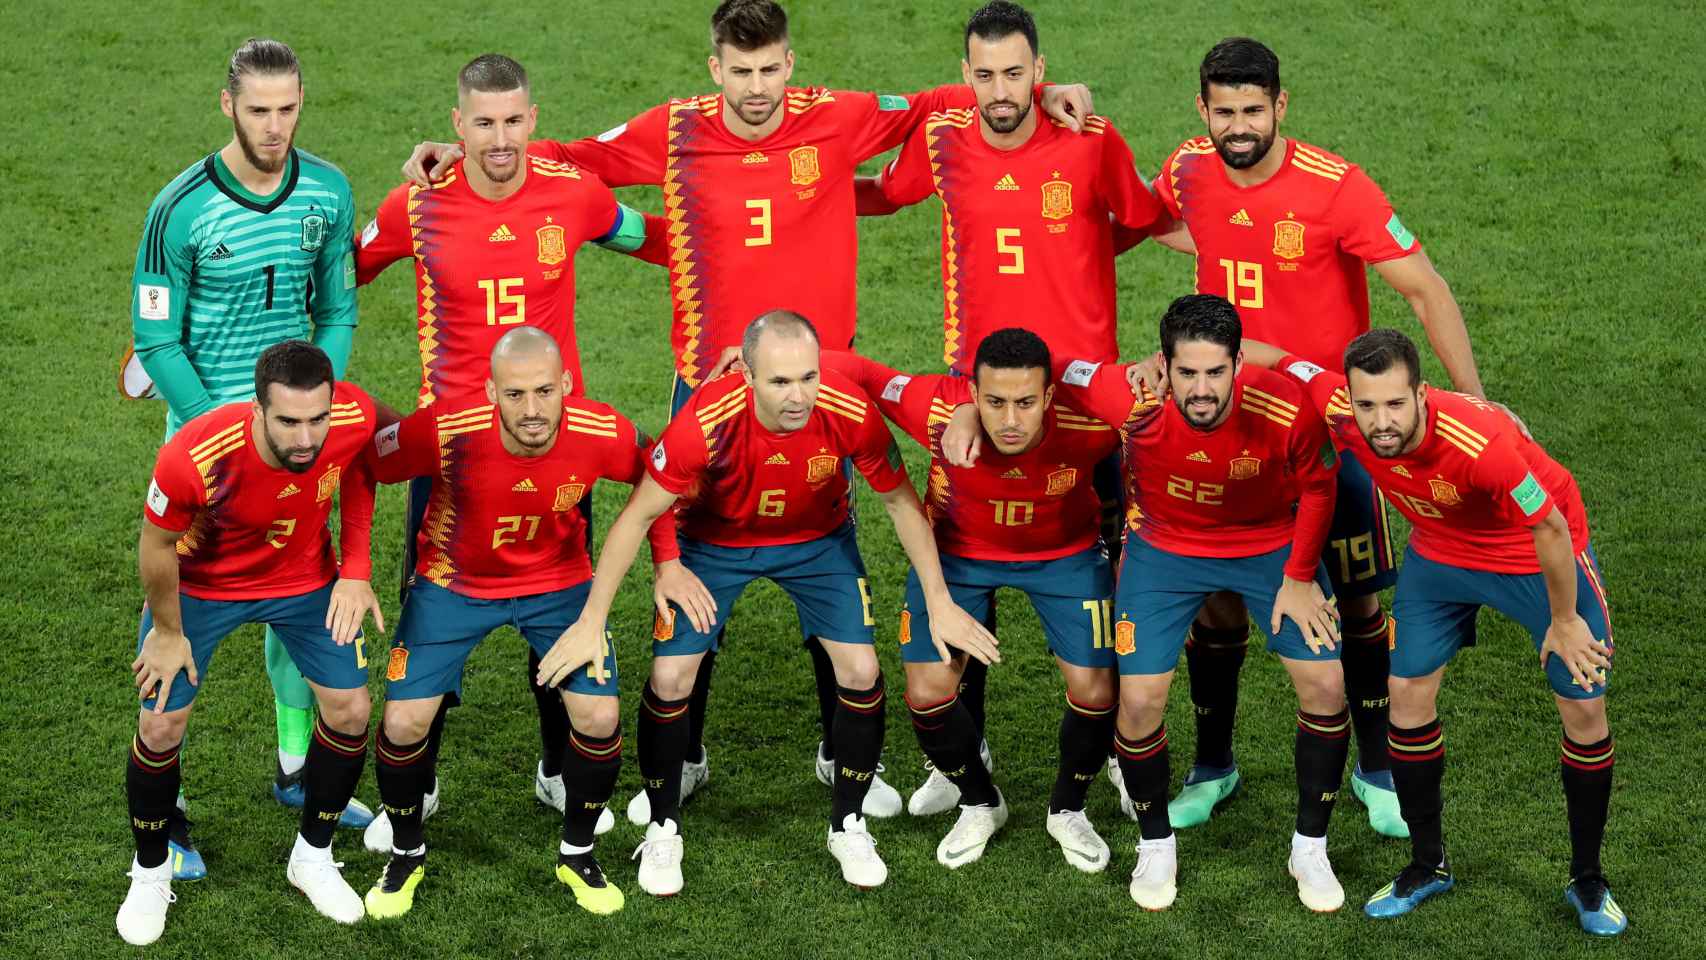 El 11 titular de España antes del encuentro ante Marruecos.